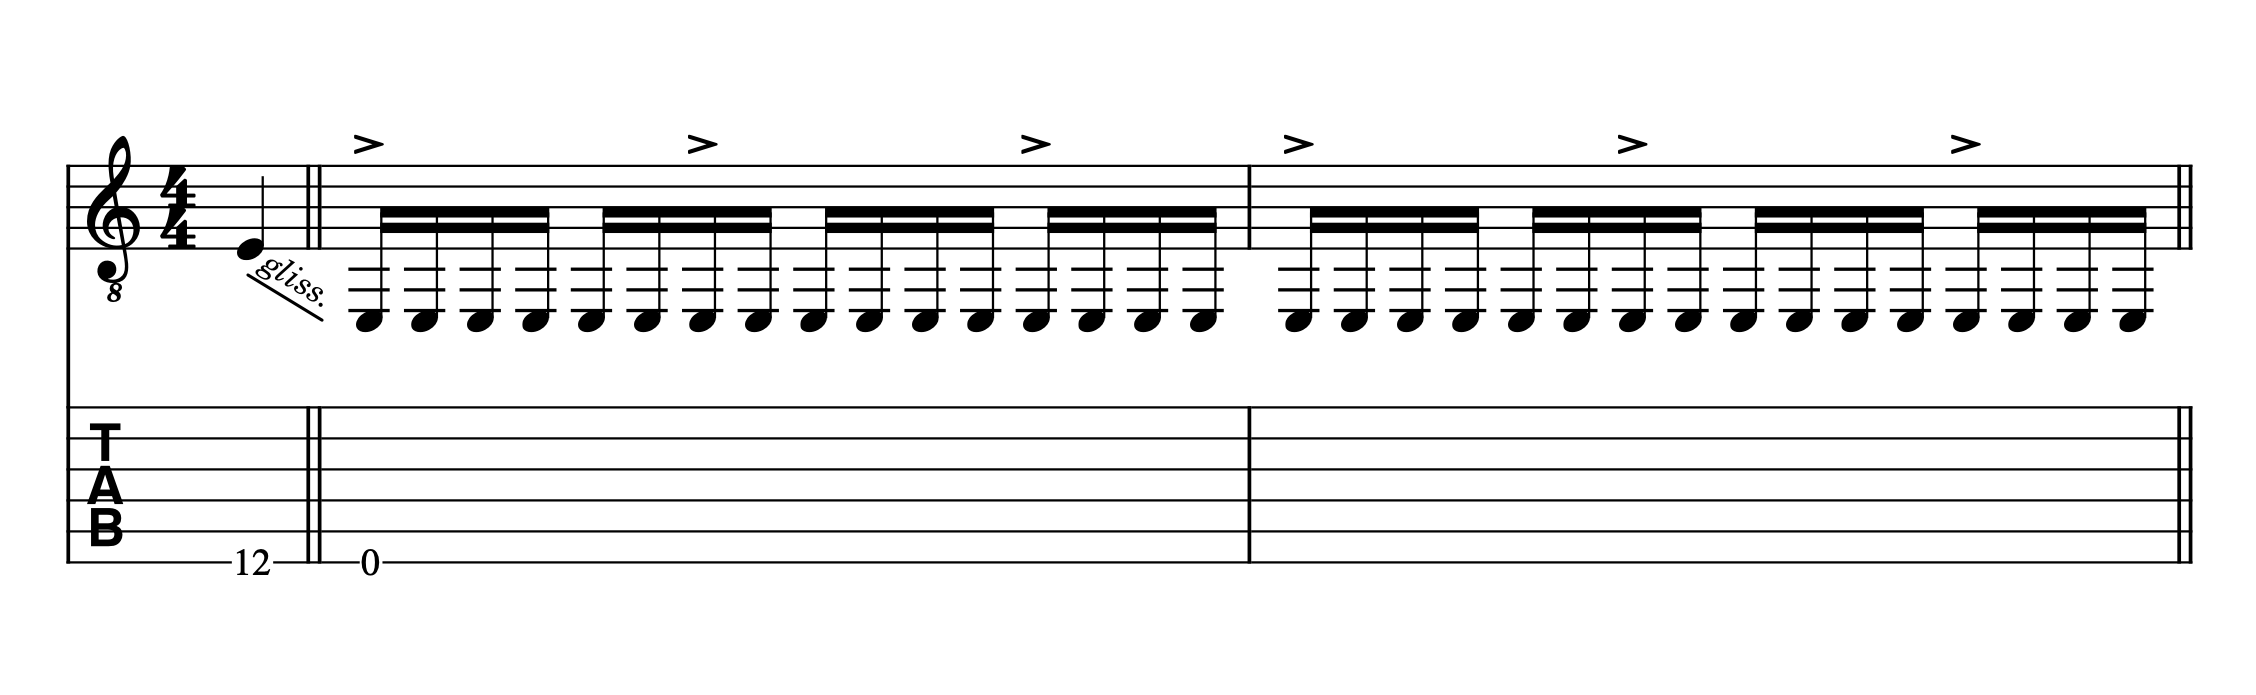 Partitura y tablatura con el trémolo de guitarra en la introducción de Misirlou de Dick Dale